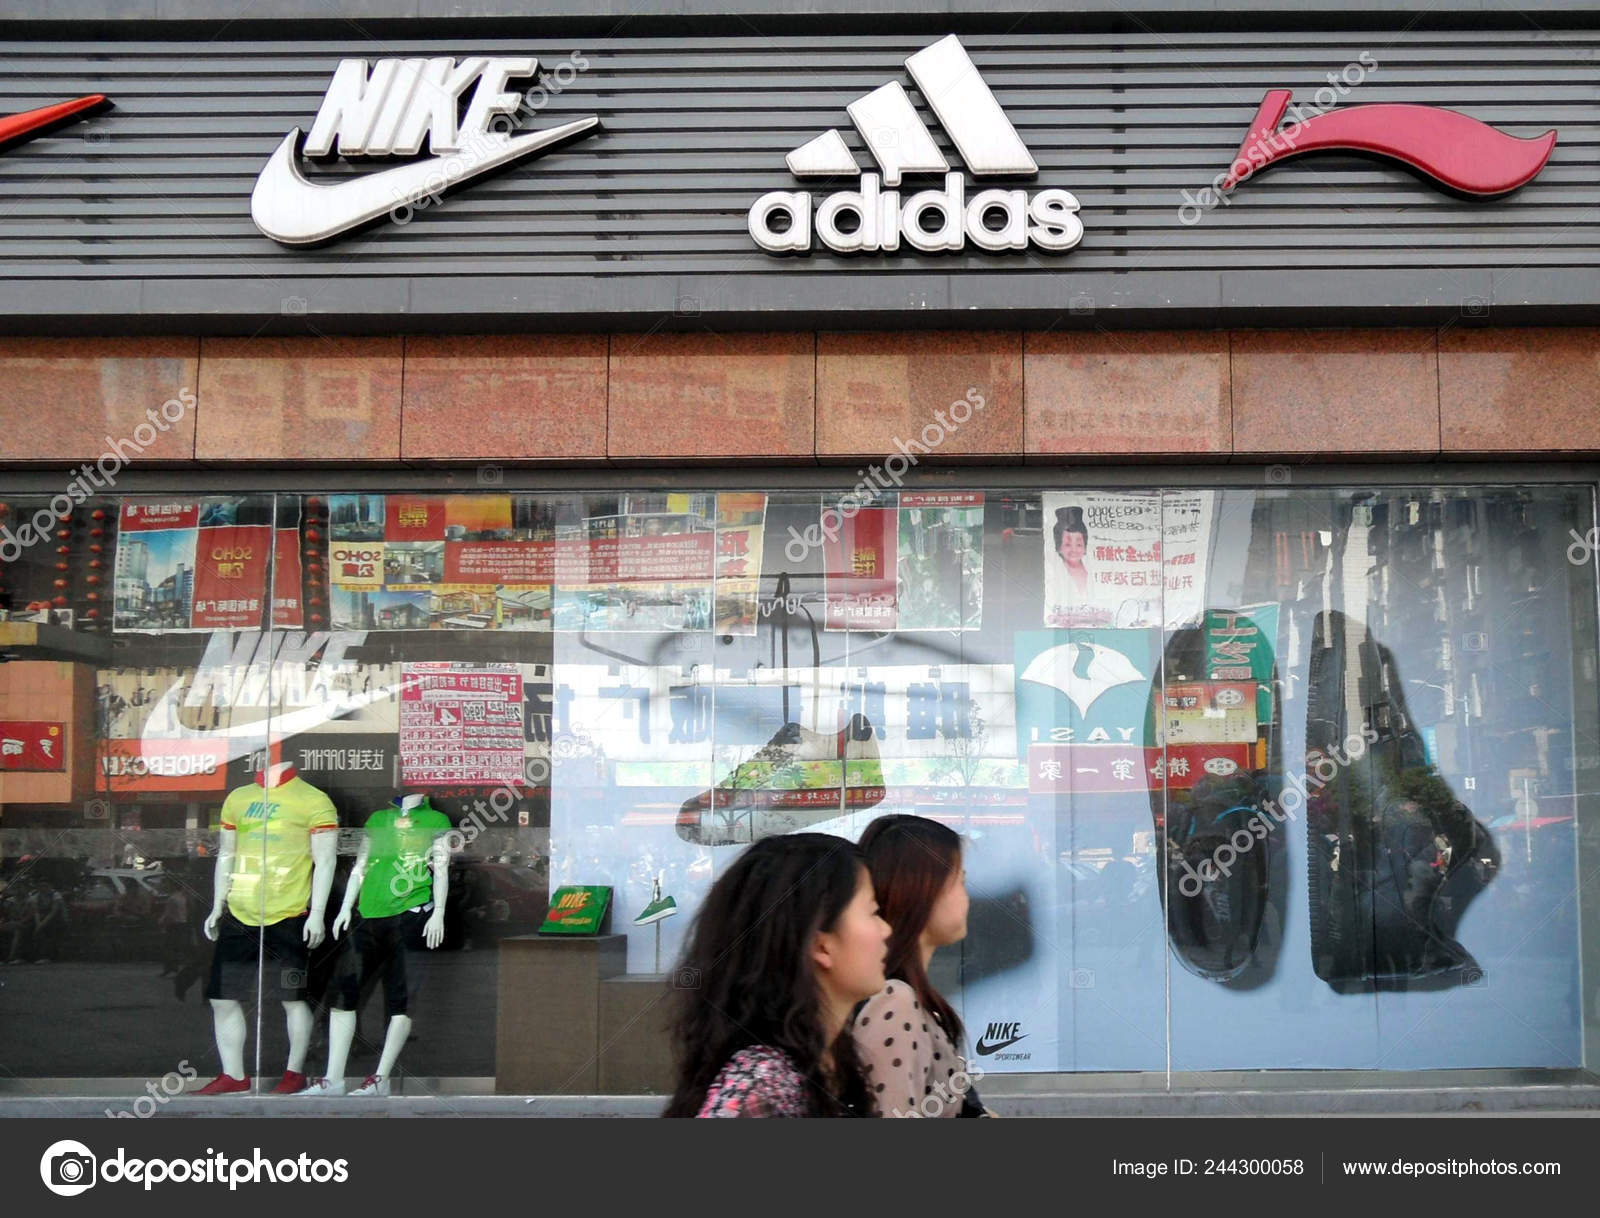 Lokale Beboere Går Forbi Skiltene Nike Adidas Ning Sportstøj Butik – Redaktionelle stock-fotos ChinaImages #244300058